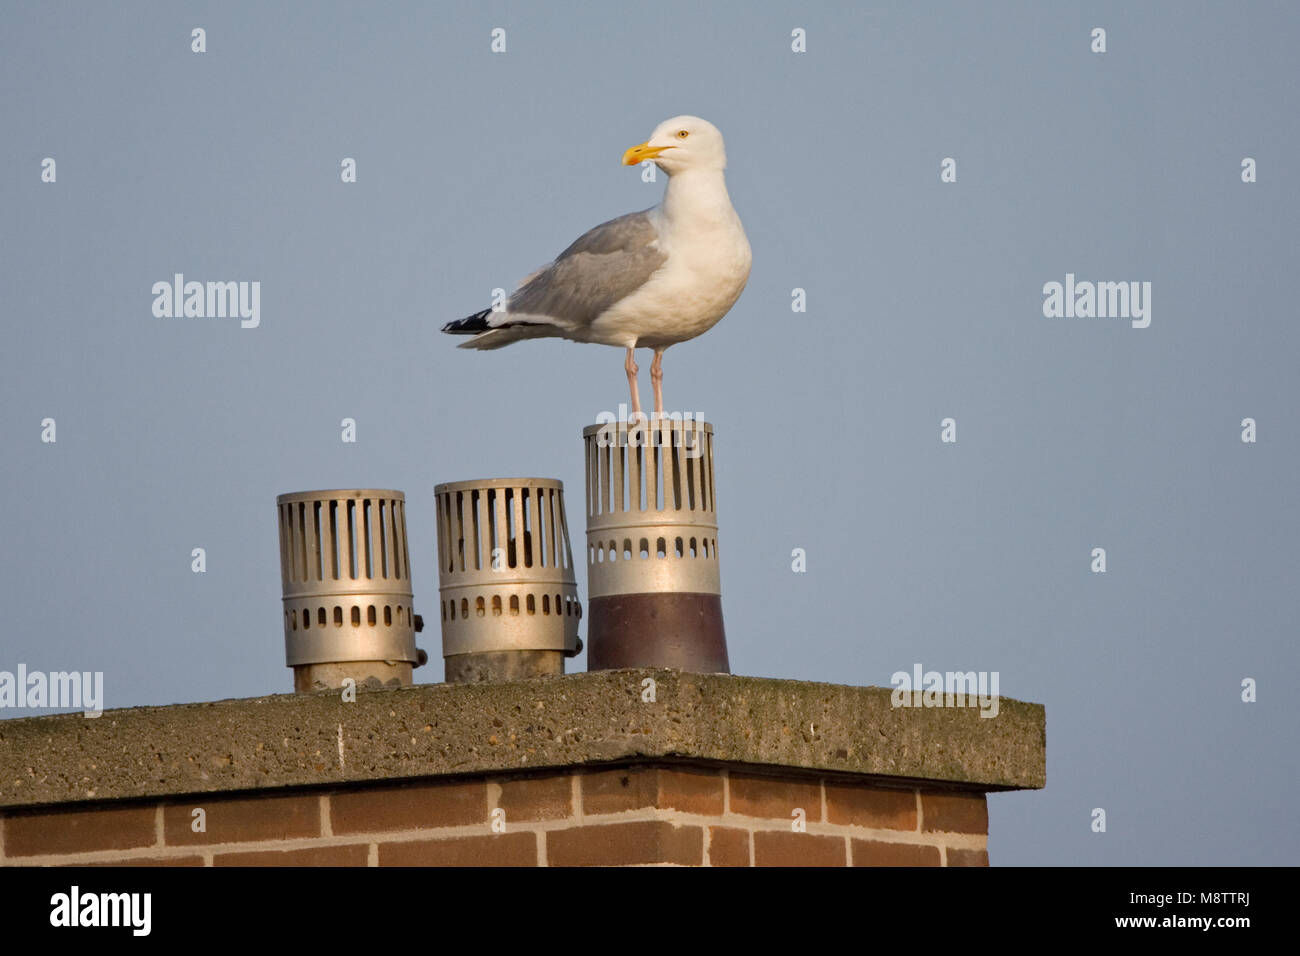 Zilvermeeuw op schoorsteen; Herring Gull on chimney Stock Photo